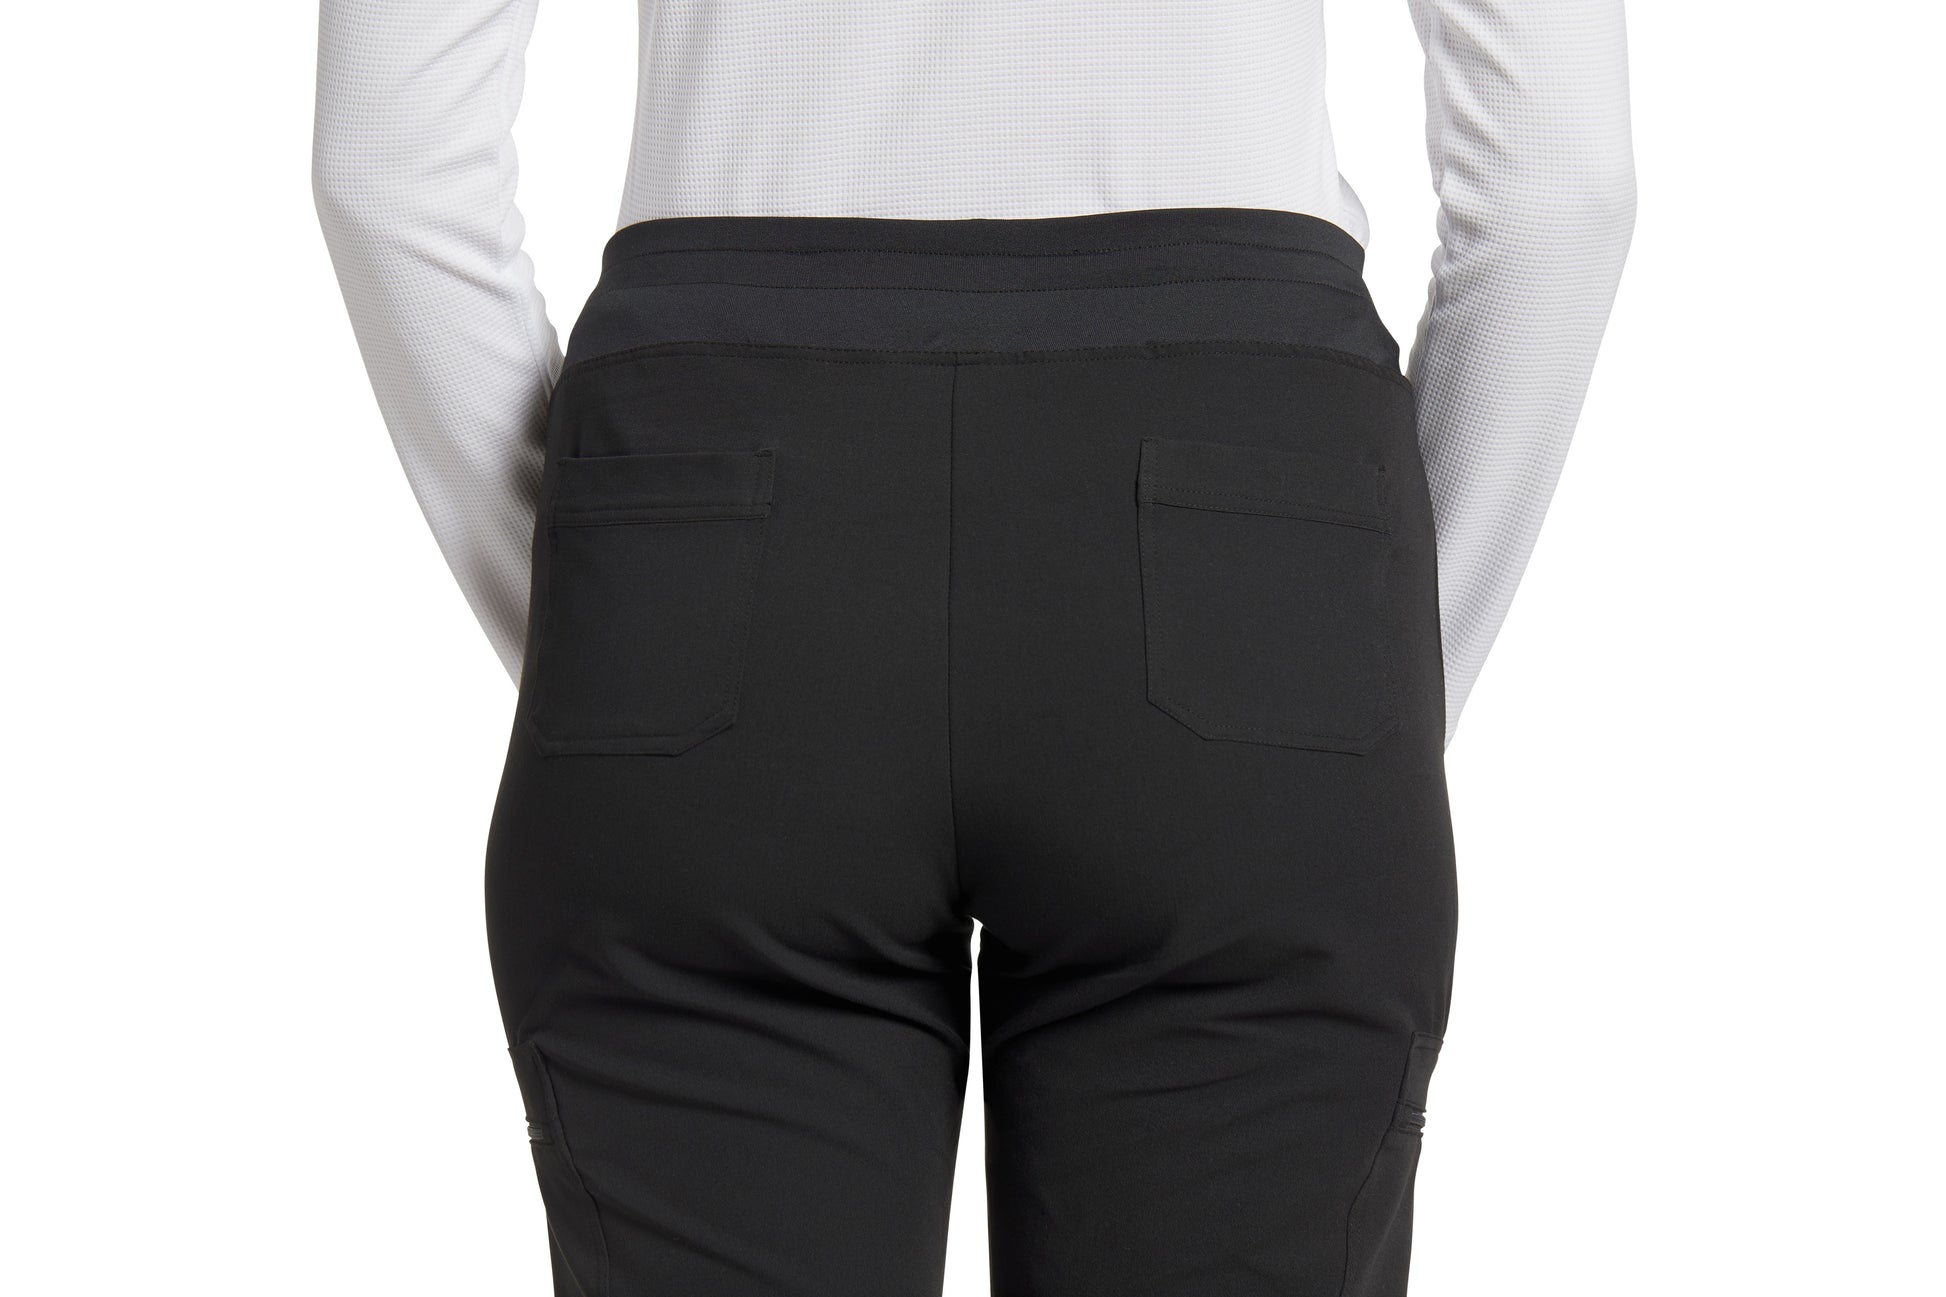 Pantalon de travail poches cargo V-Tess White Cross #337 noir dos